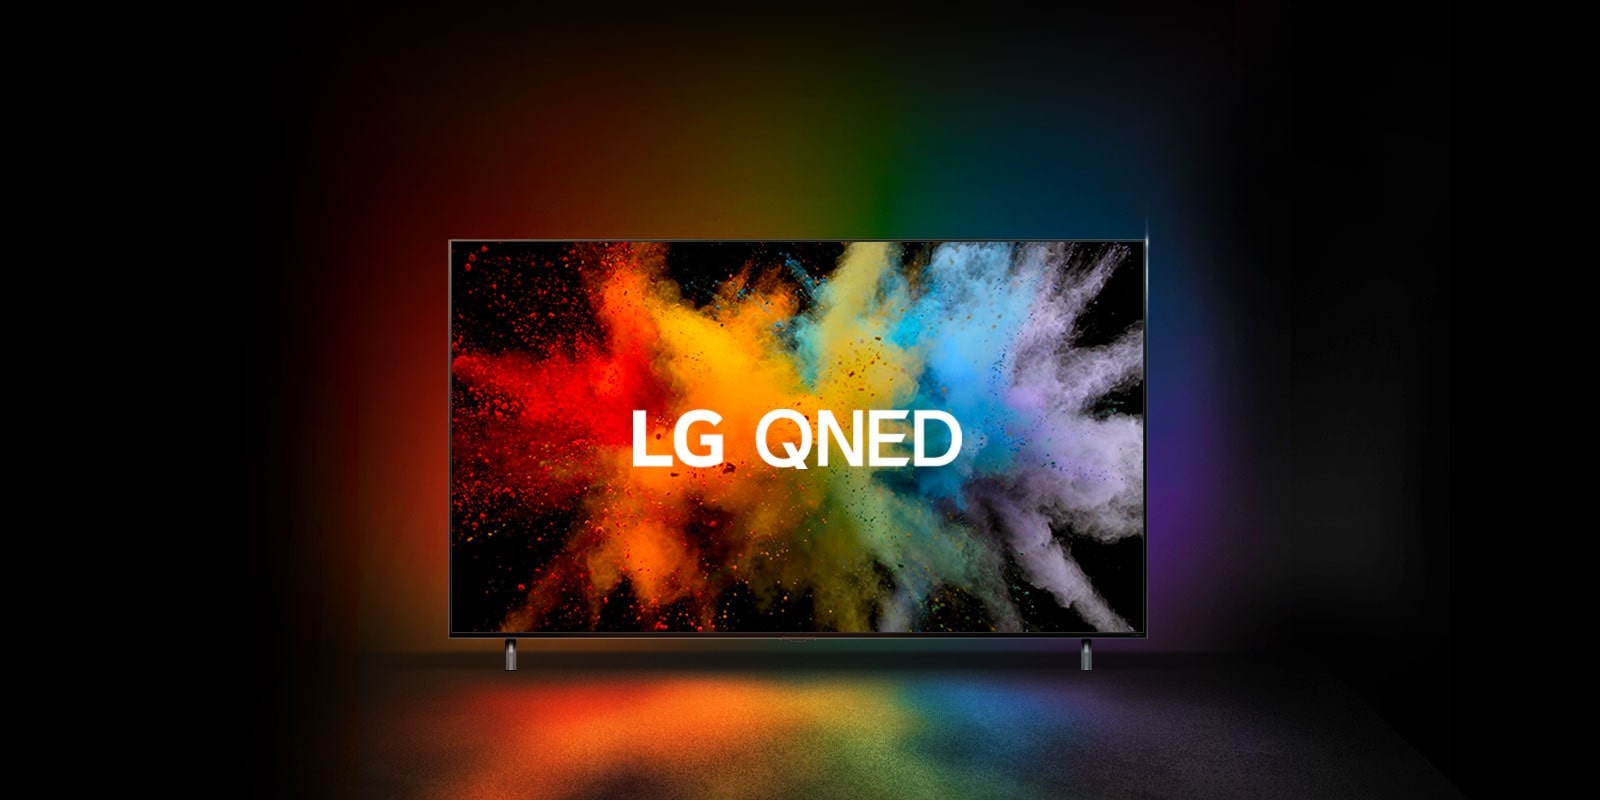 Telewizor LG QNED w ciemnym pomieszczeniu. Farbowane proszki tworzą eksplozję tęczowych kolorów na telewizorze.